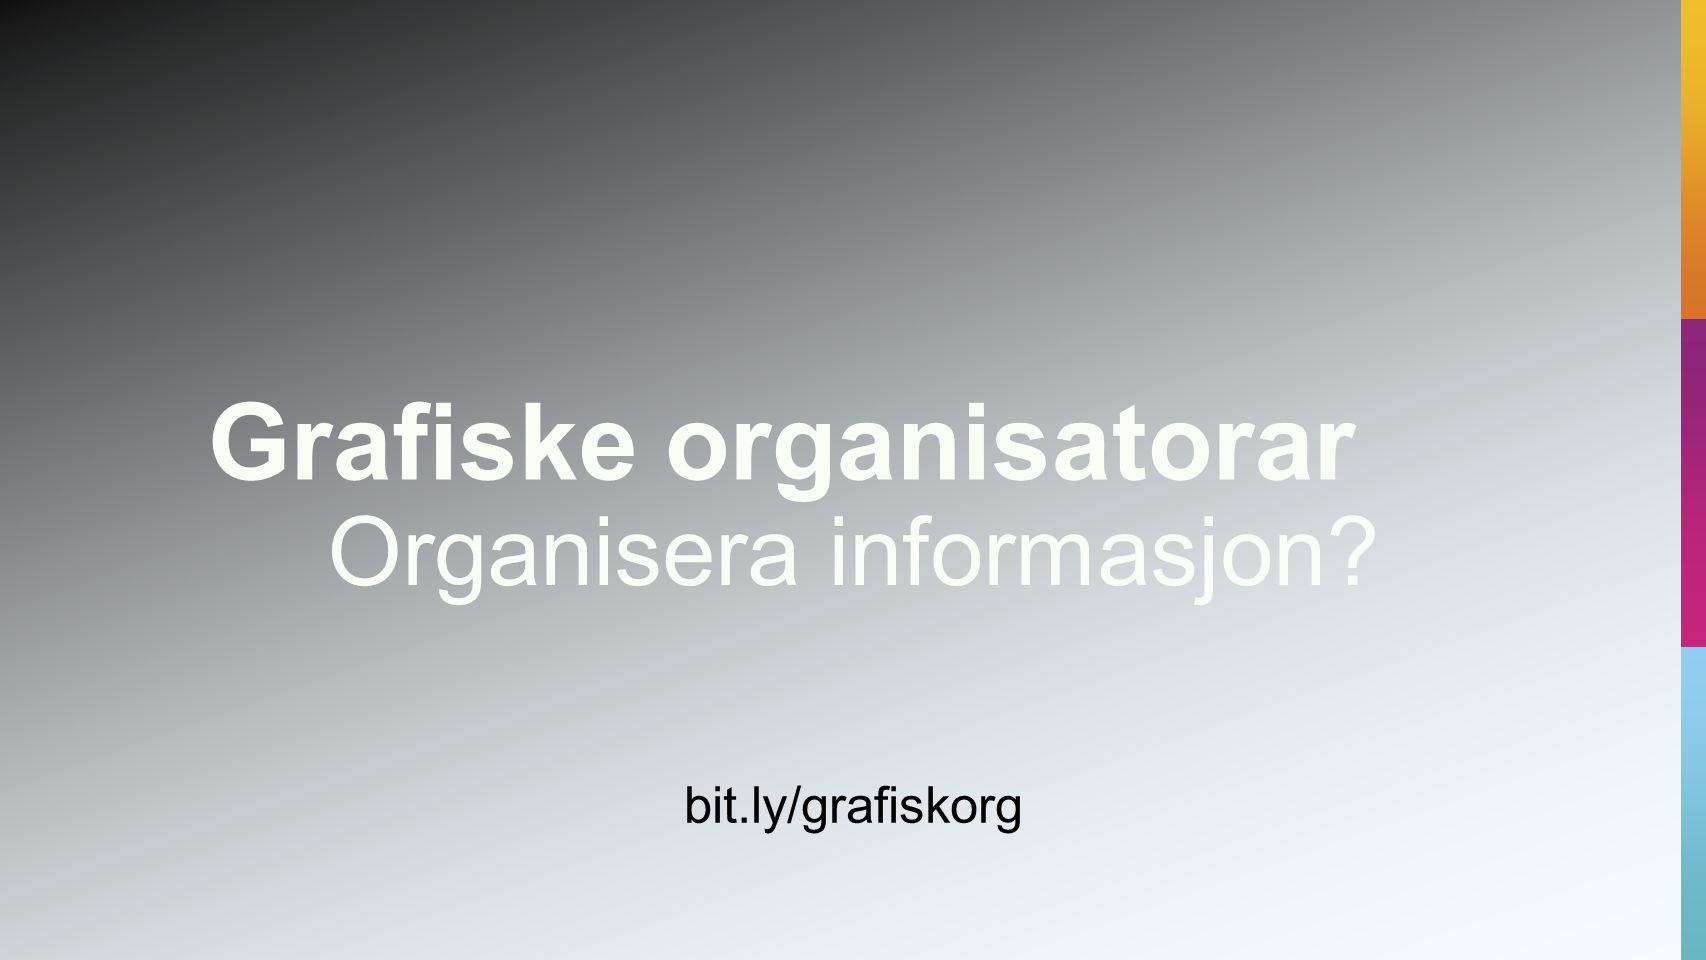 Organisera informasjon bit.ly/grafiskorg